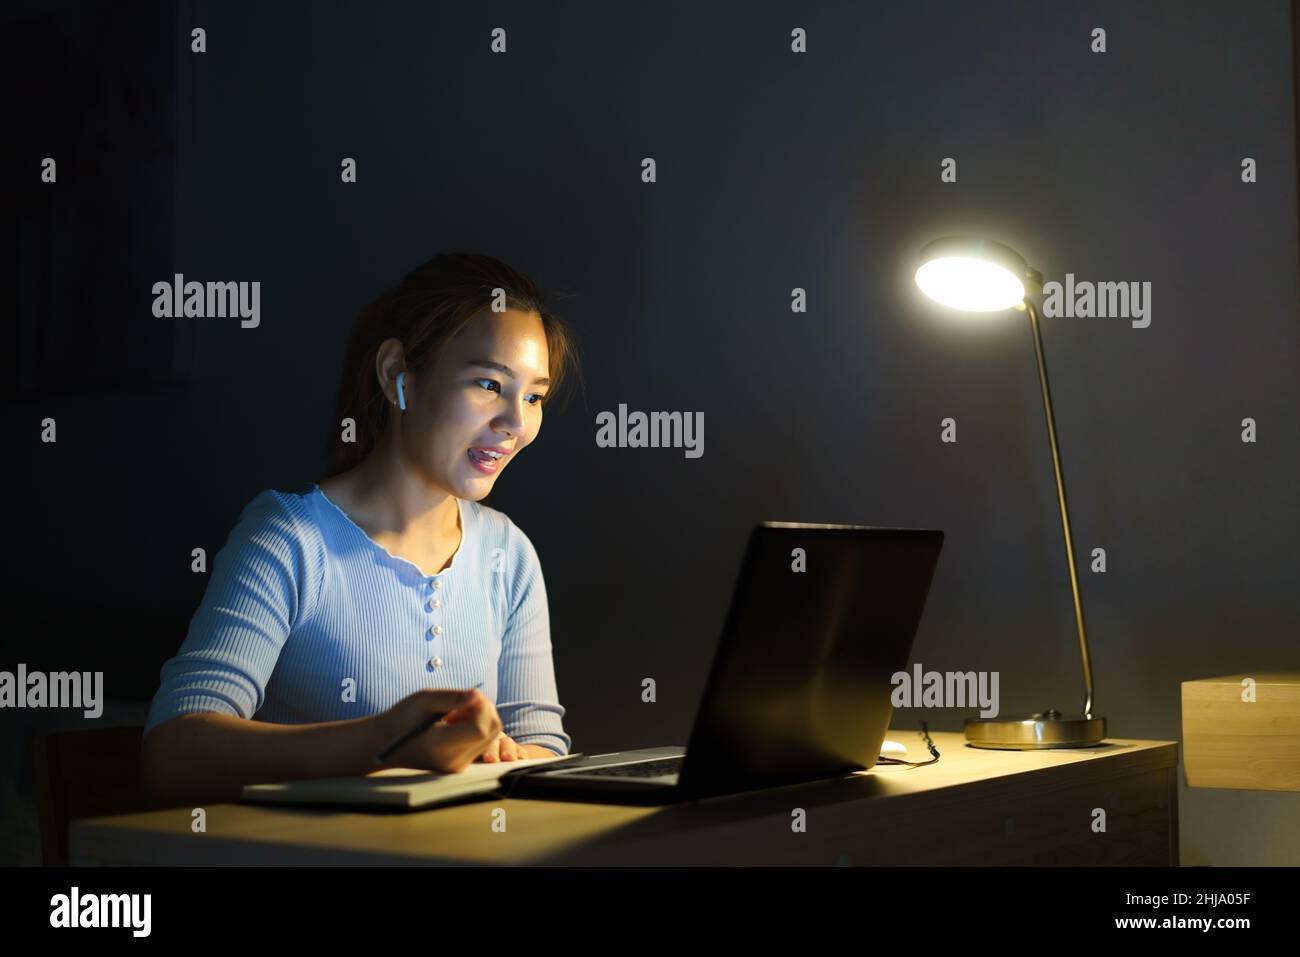 Les femmes asiatiques qui travaillent à la maison sont assises au travail avec leurs collègues ou leurs responsables par appel vidéo la nuit à la maison. Banque D'Images